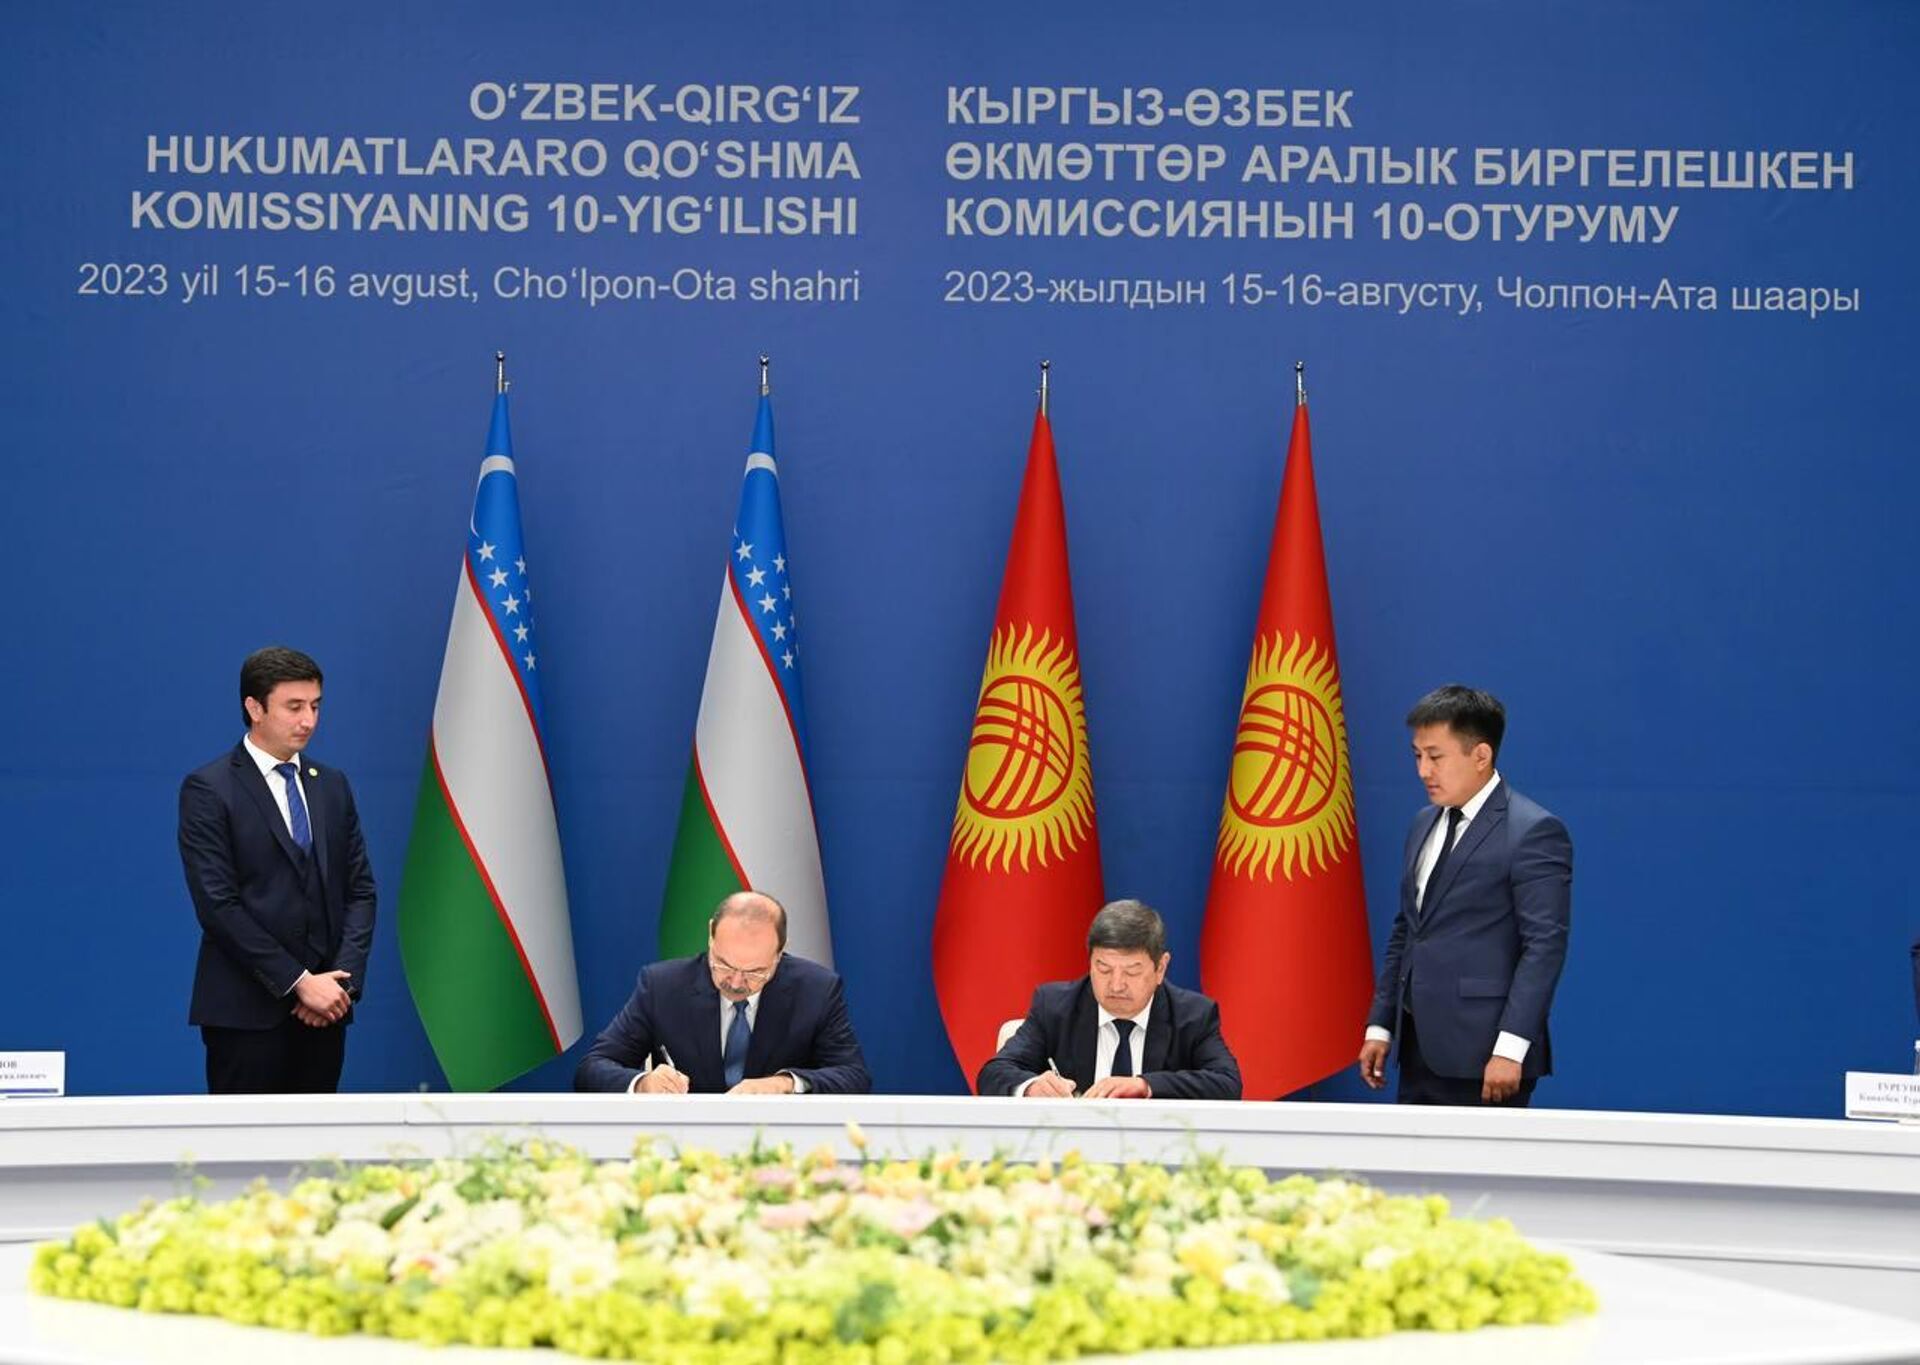 Состоялась встреча с участием премьер-министров Узбекистана и Кыргызстана - Sputnik Ўзбекистон, 1920, 16.08.2023